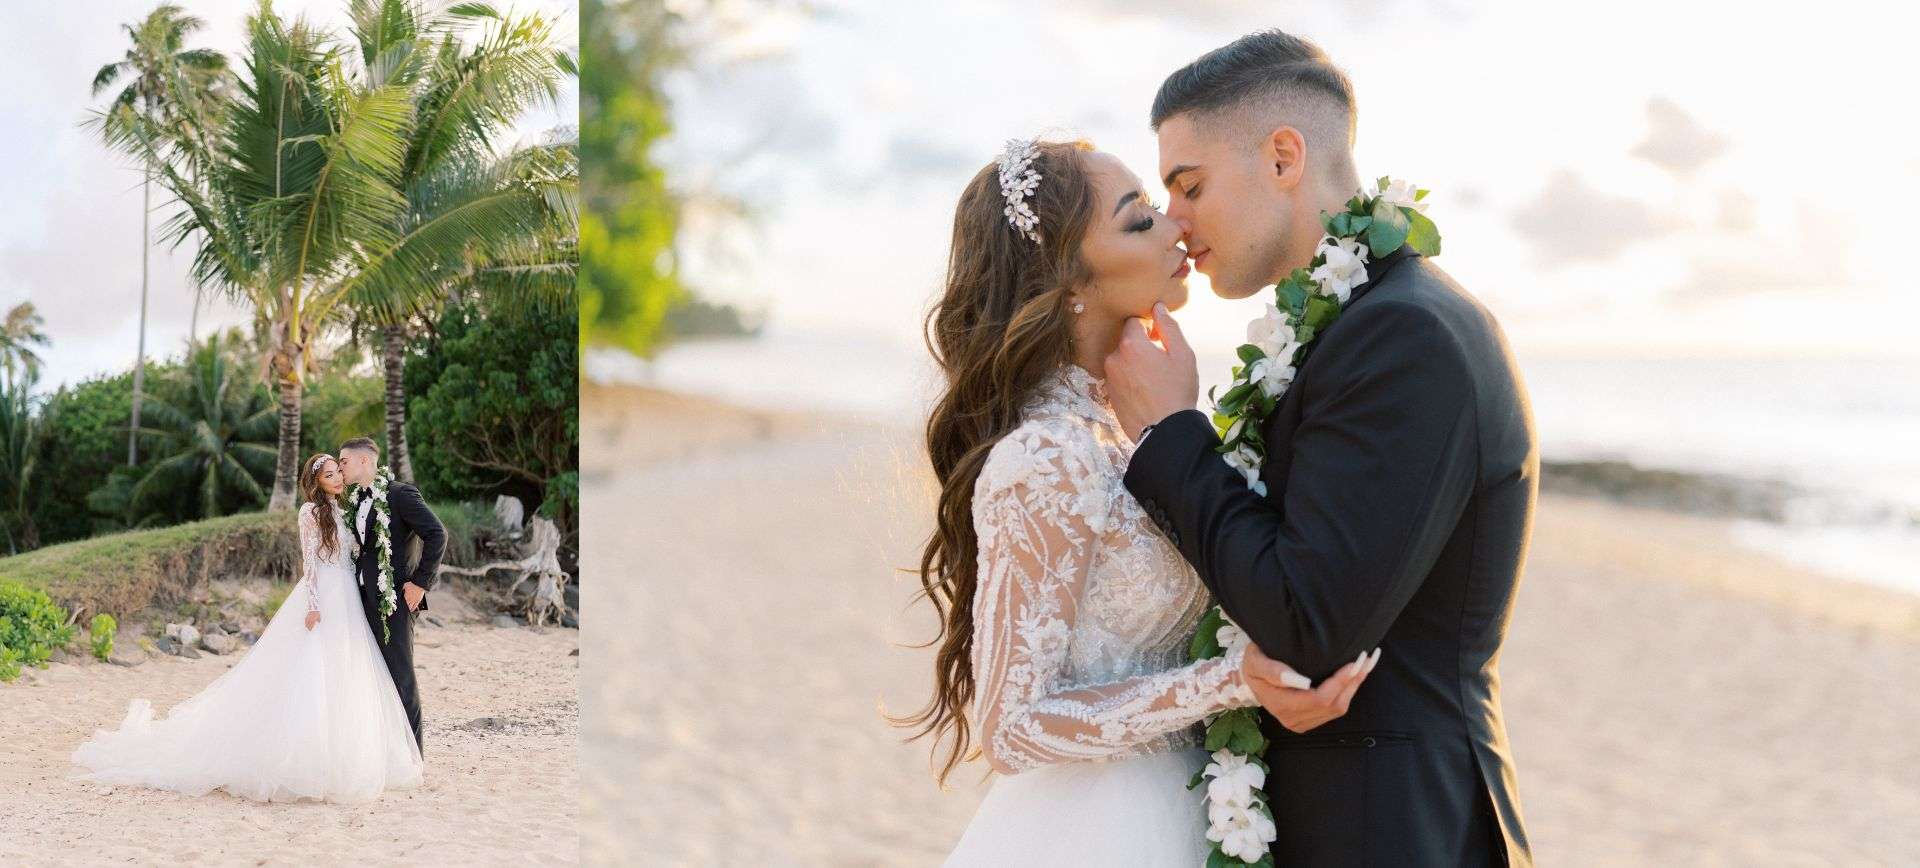 oahu elopement wedding package in hawaii